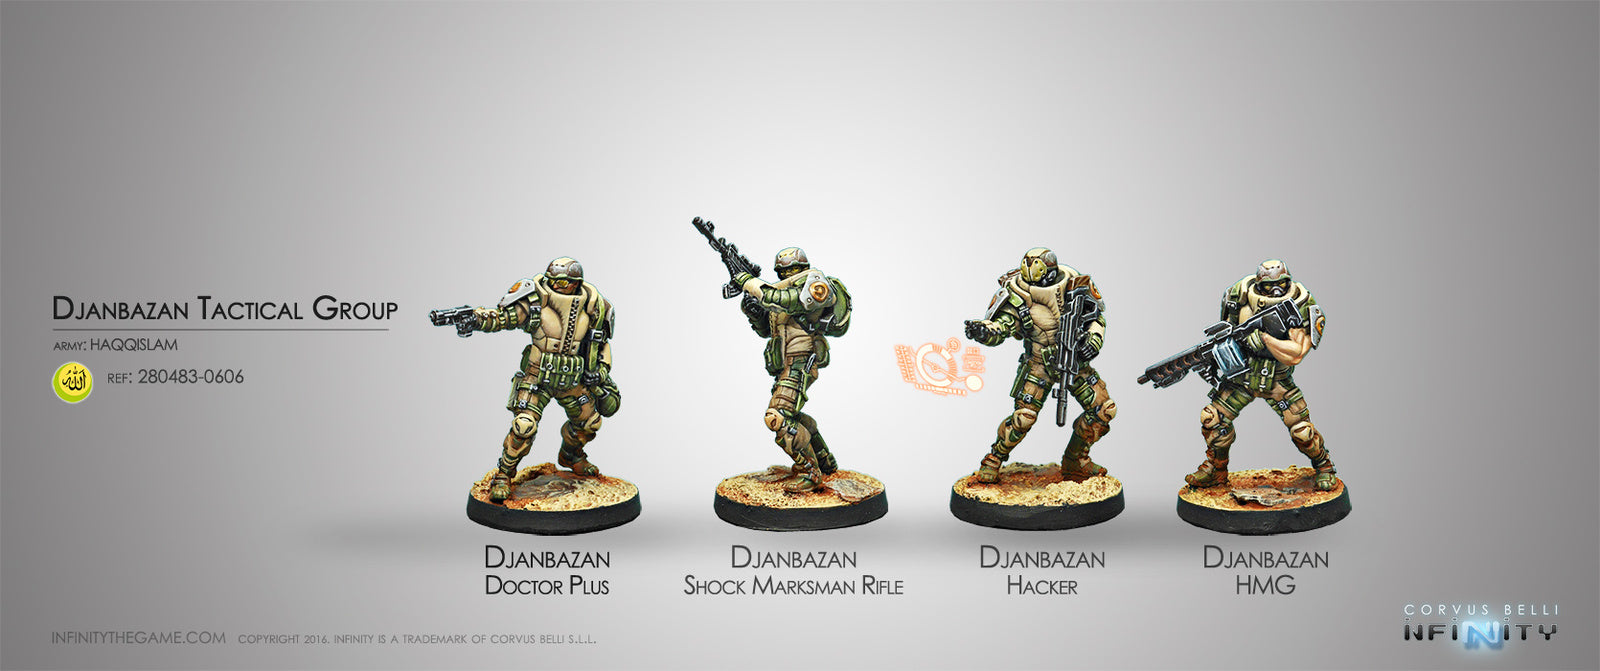 Djanbazan Tactical Group box